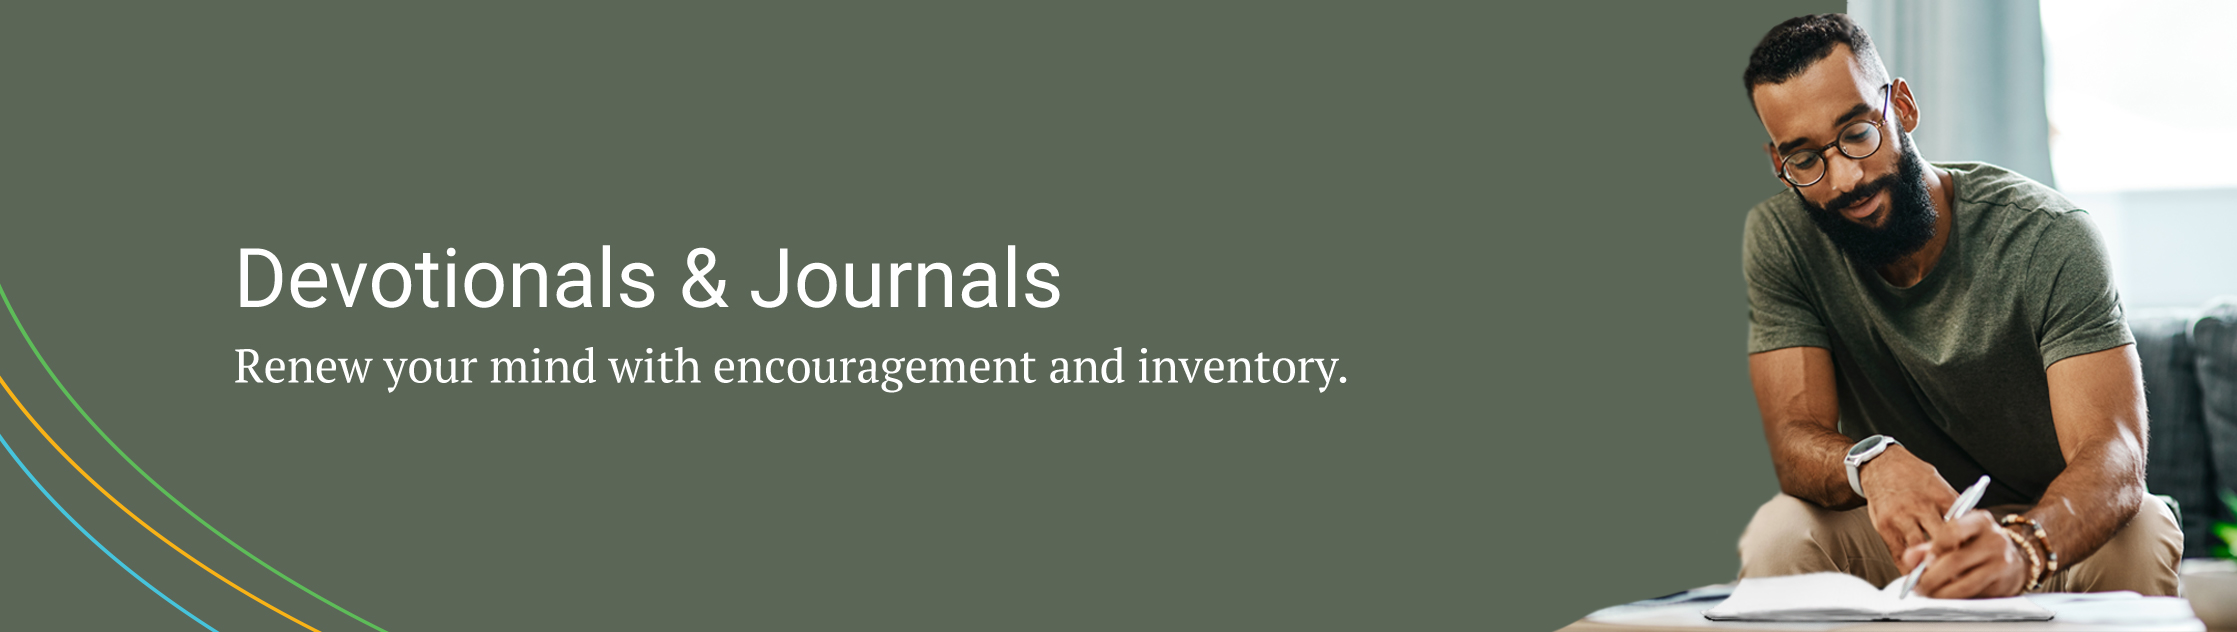 Devotionals & Journals